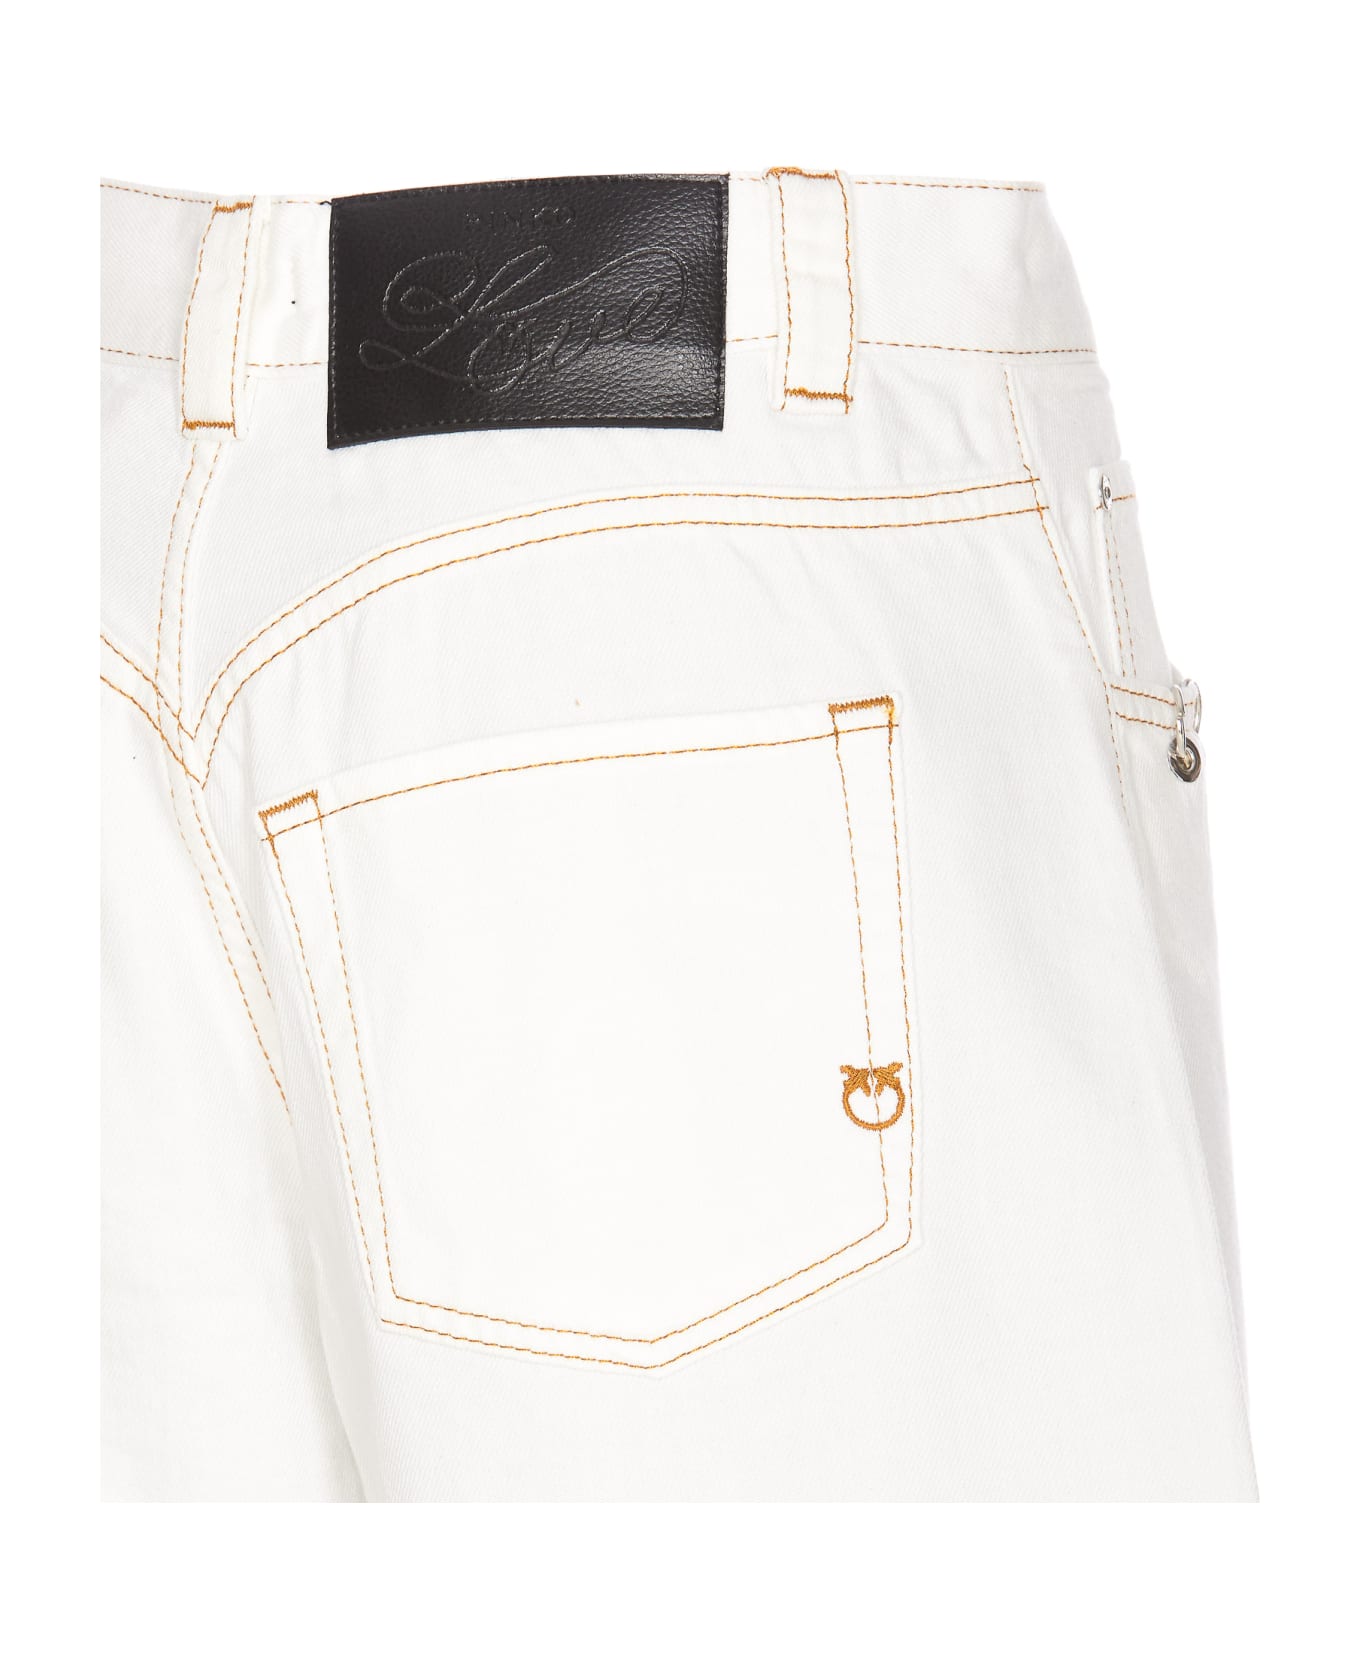 Pinko Xmen Denim Shorts - White